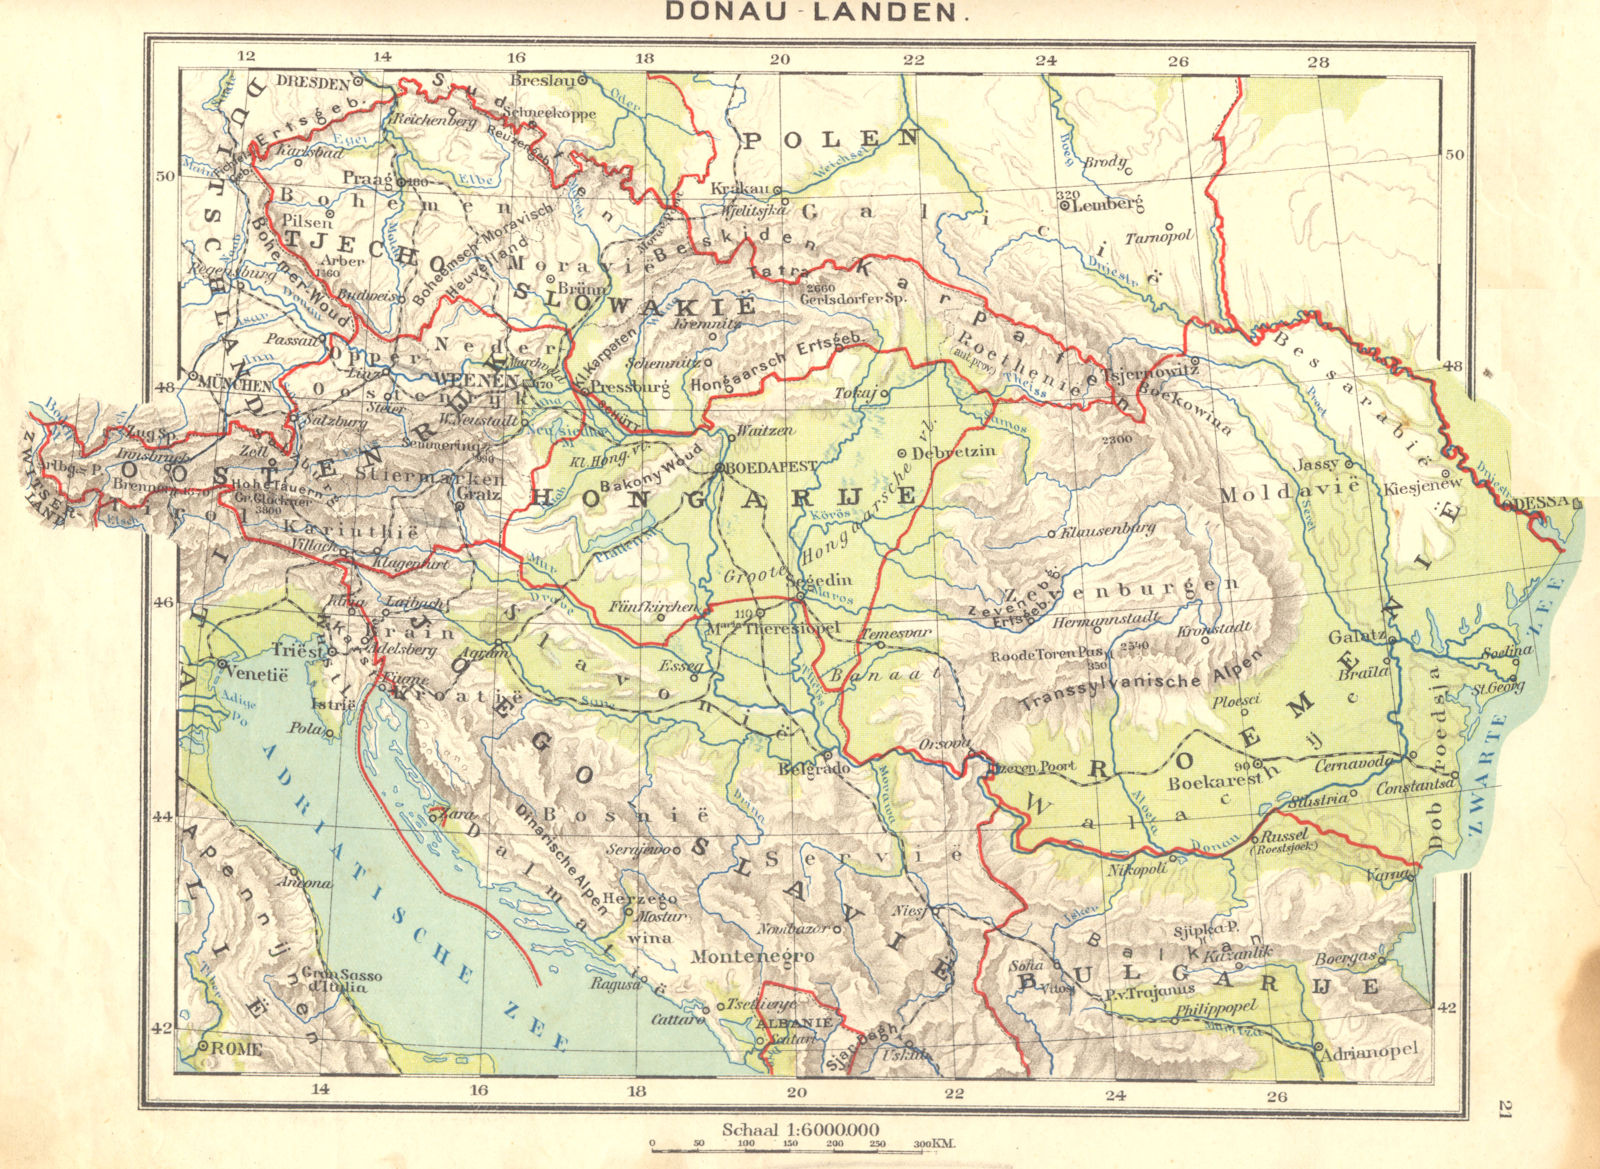 EUROPE. Donau- Landen 1922 old vintage map plan chart